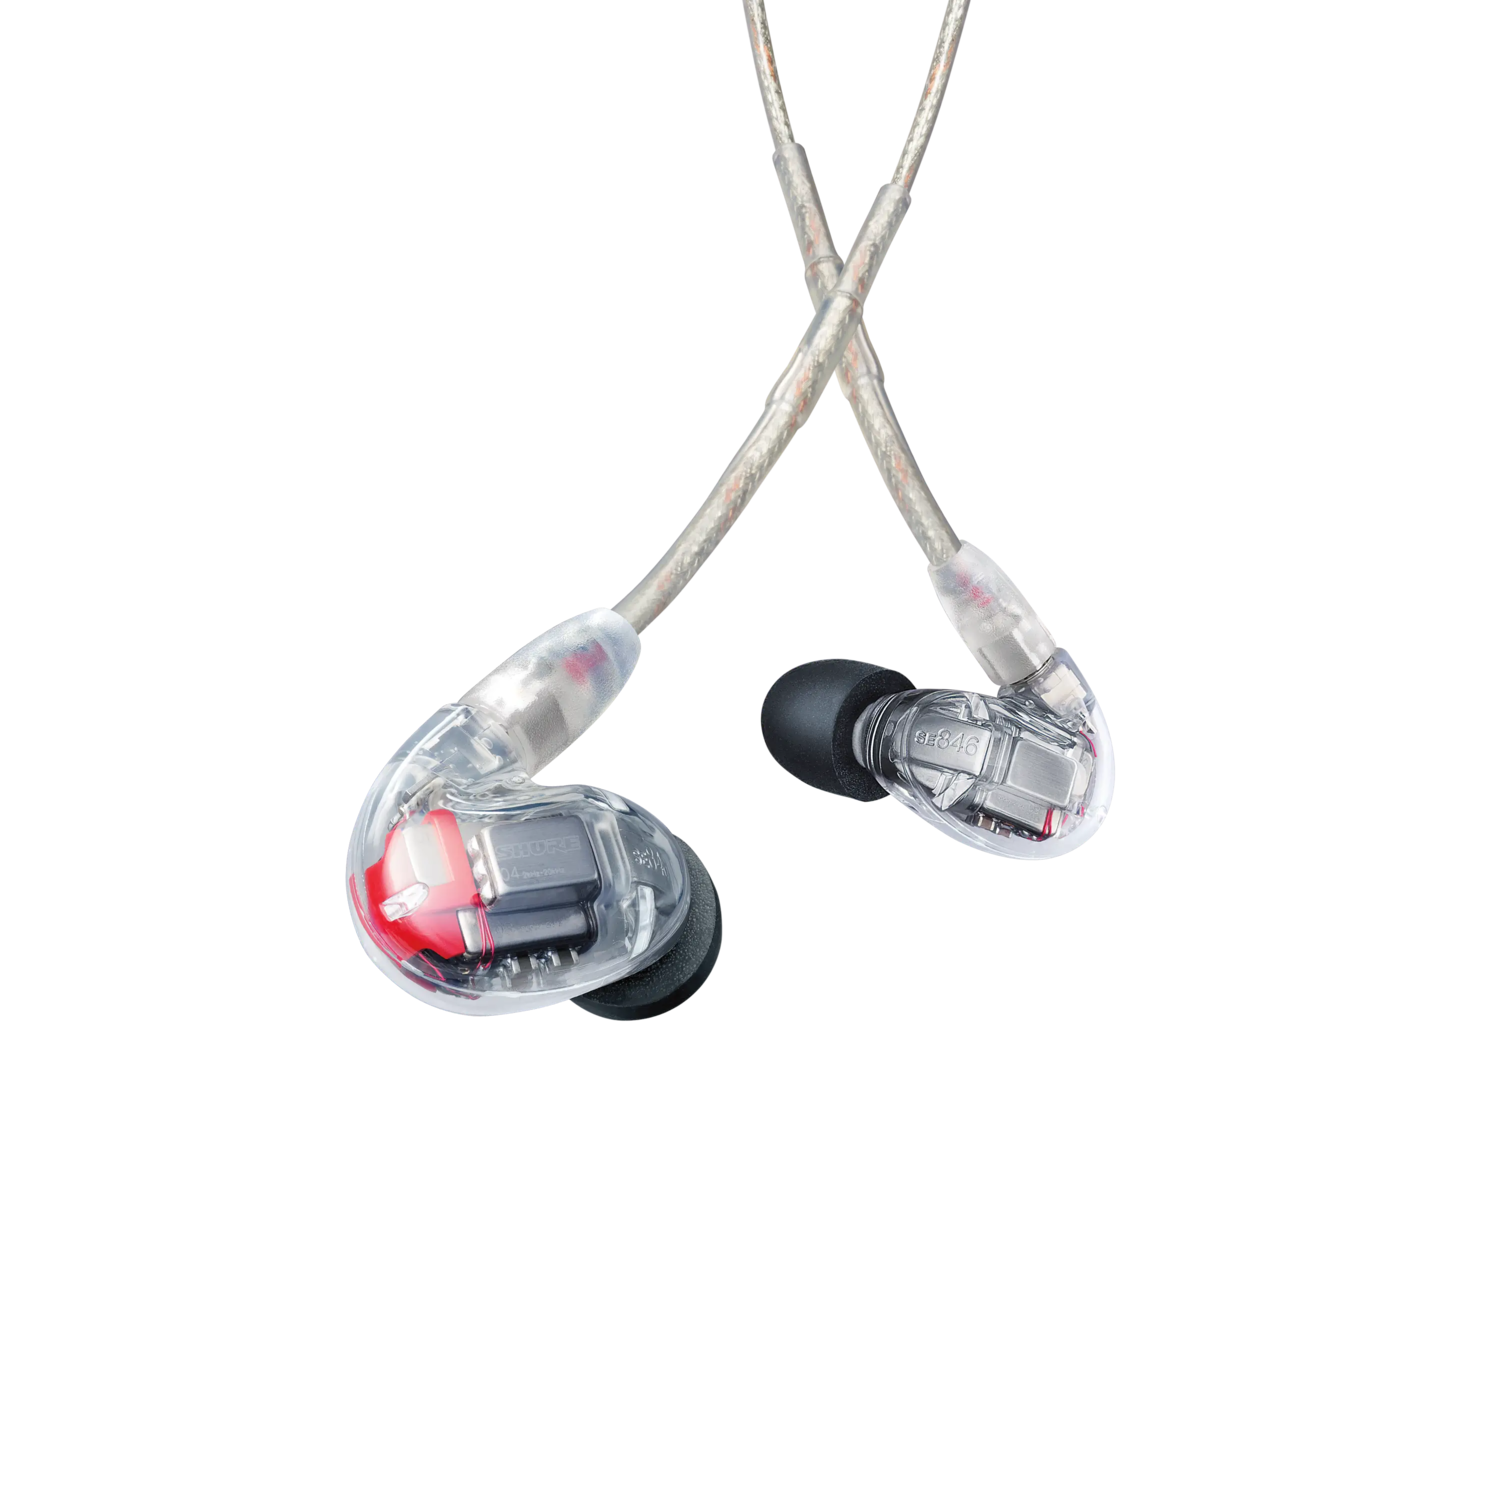 SE846 Gen 2 - Professional Sound Isolating™ Earphones - Shure